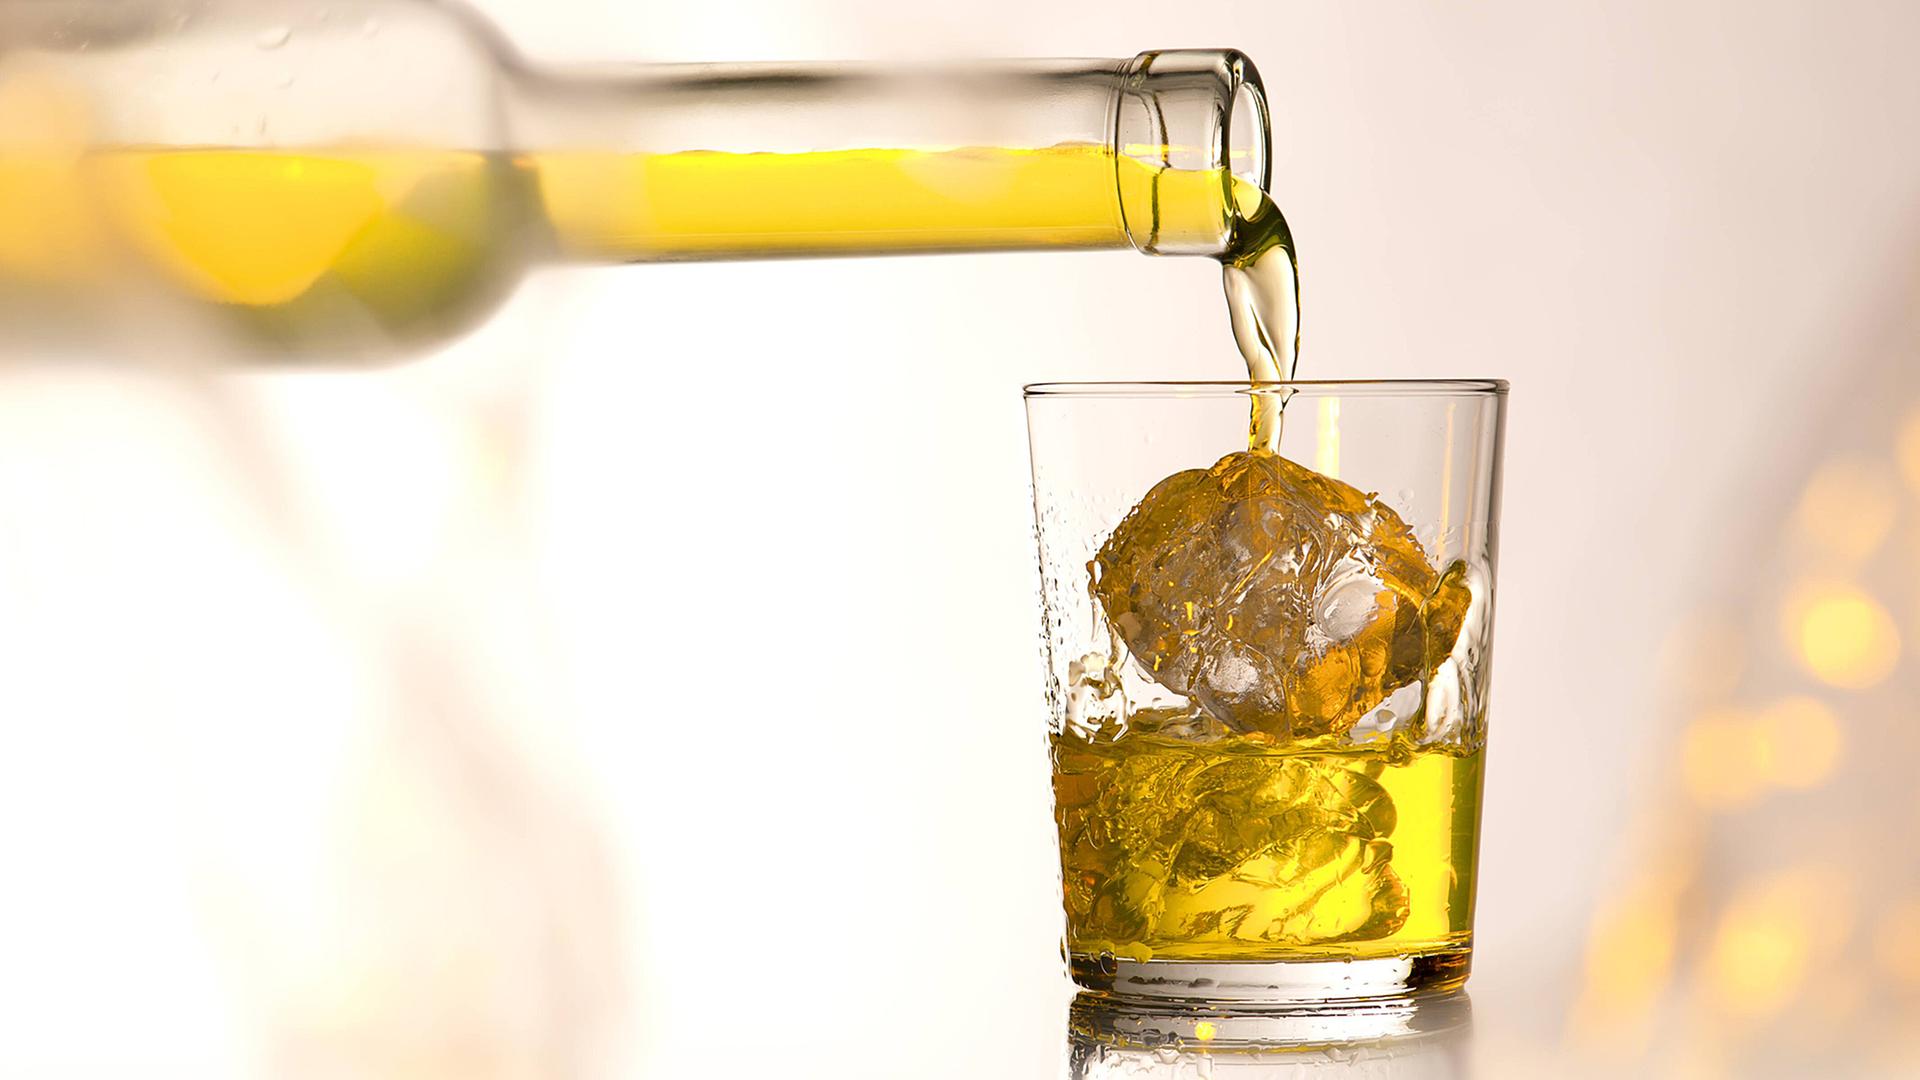 Whisky on the rocks - wenn das EU-Parlament eine Erhöhung der Alkoholsteuer beschließt, könnte das bald ein teures Vergnügen werden.